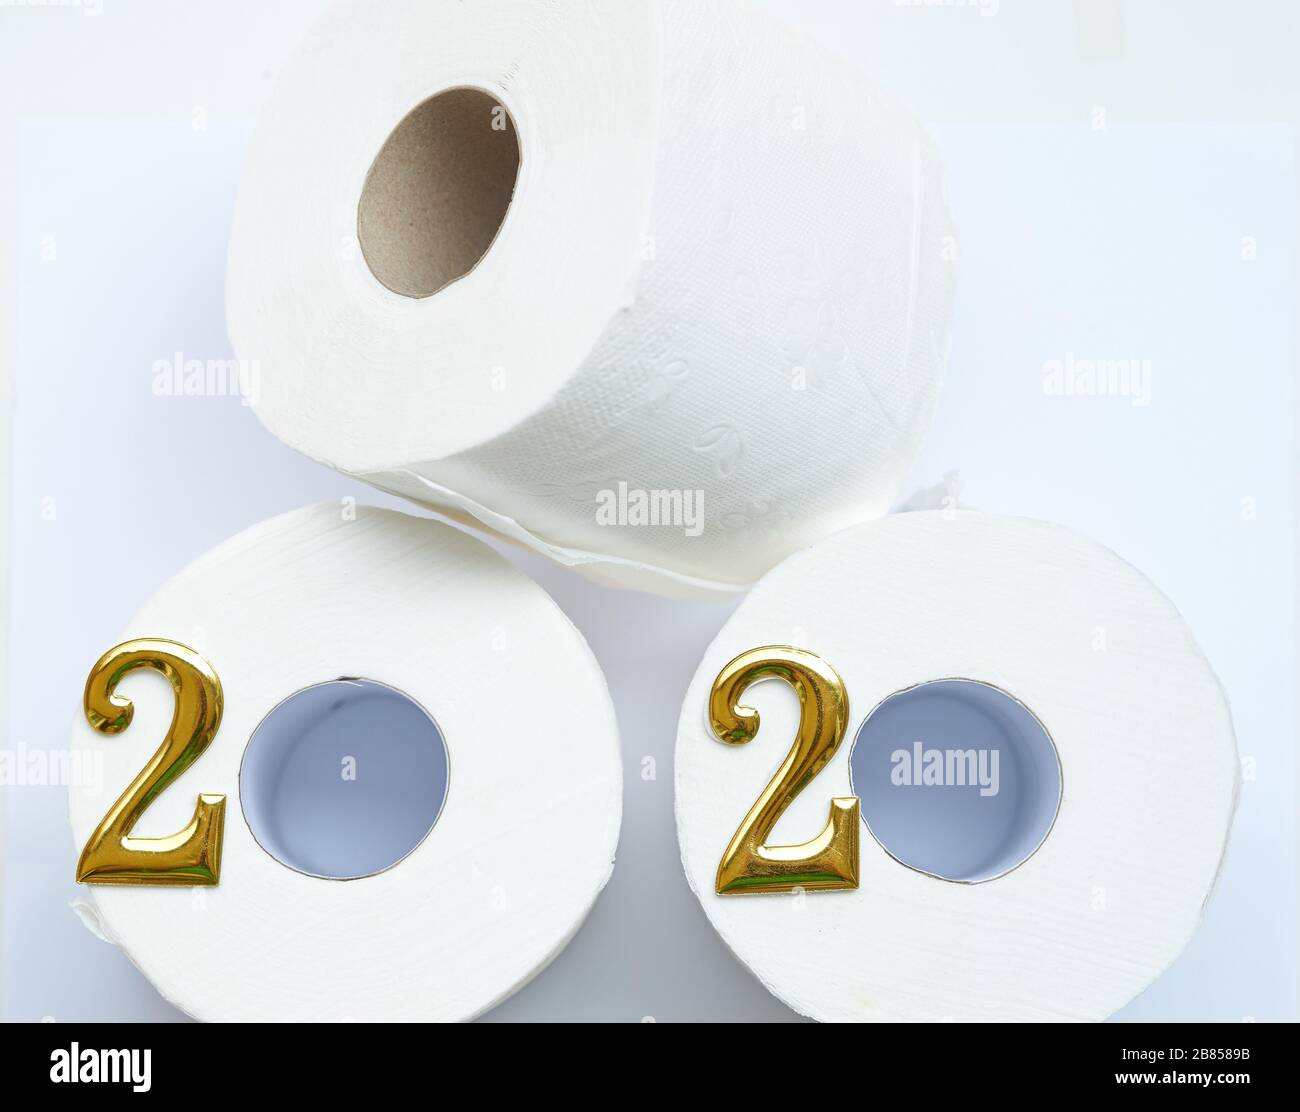 Rouleaux de toilettes, disposés pour représenter l'année 2020. Banque D'Images